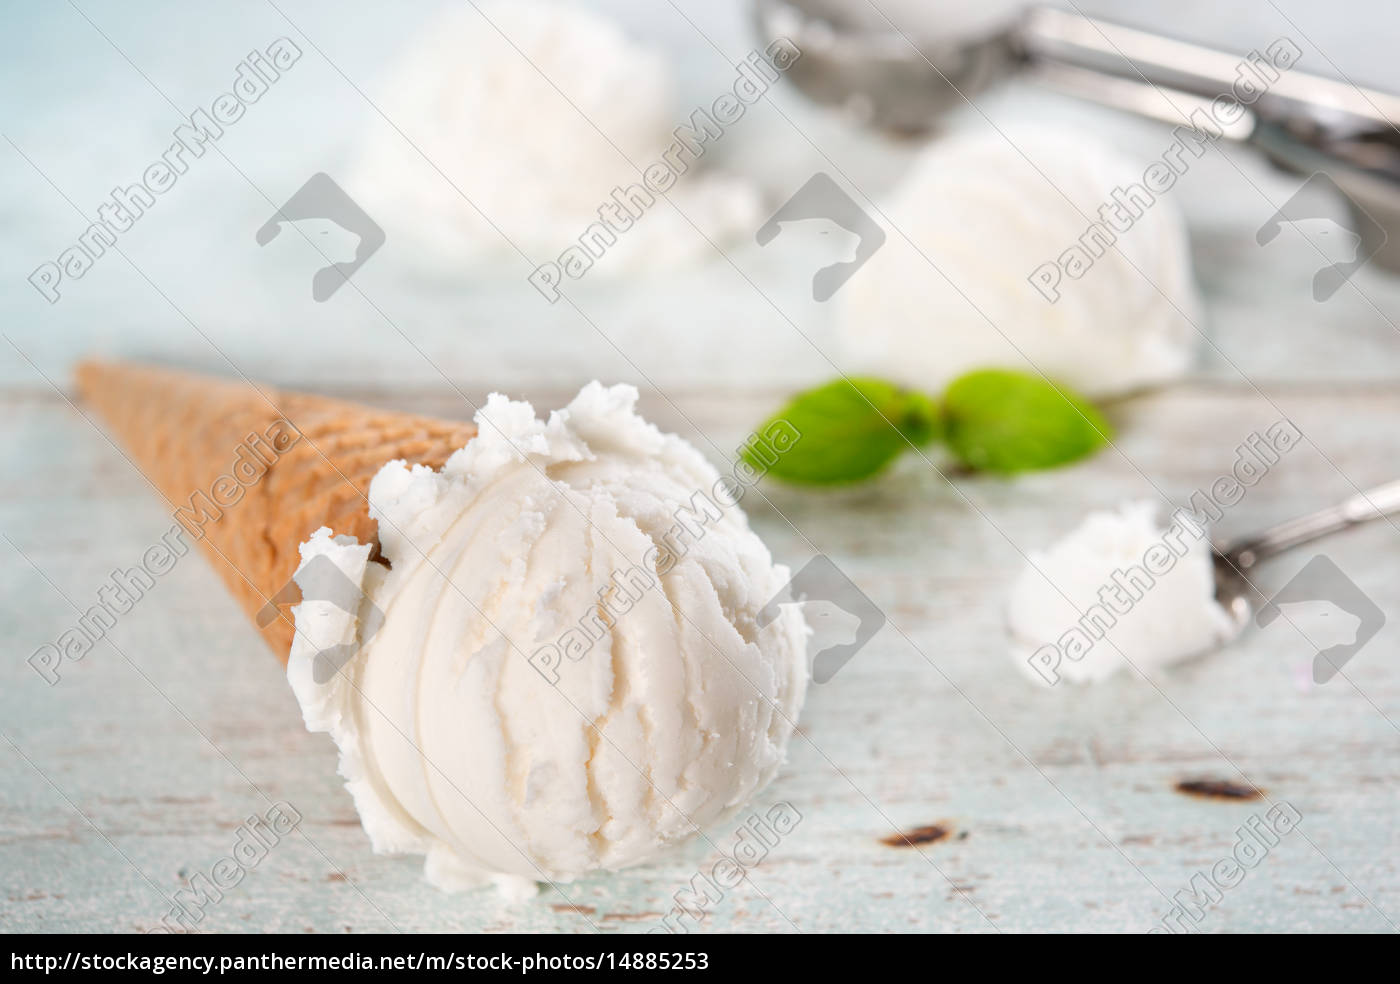 nahaufnahme vanille-milch eistüte - Stockfoto #14885253 | Bildagentur ...